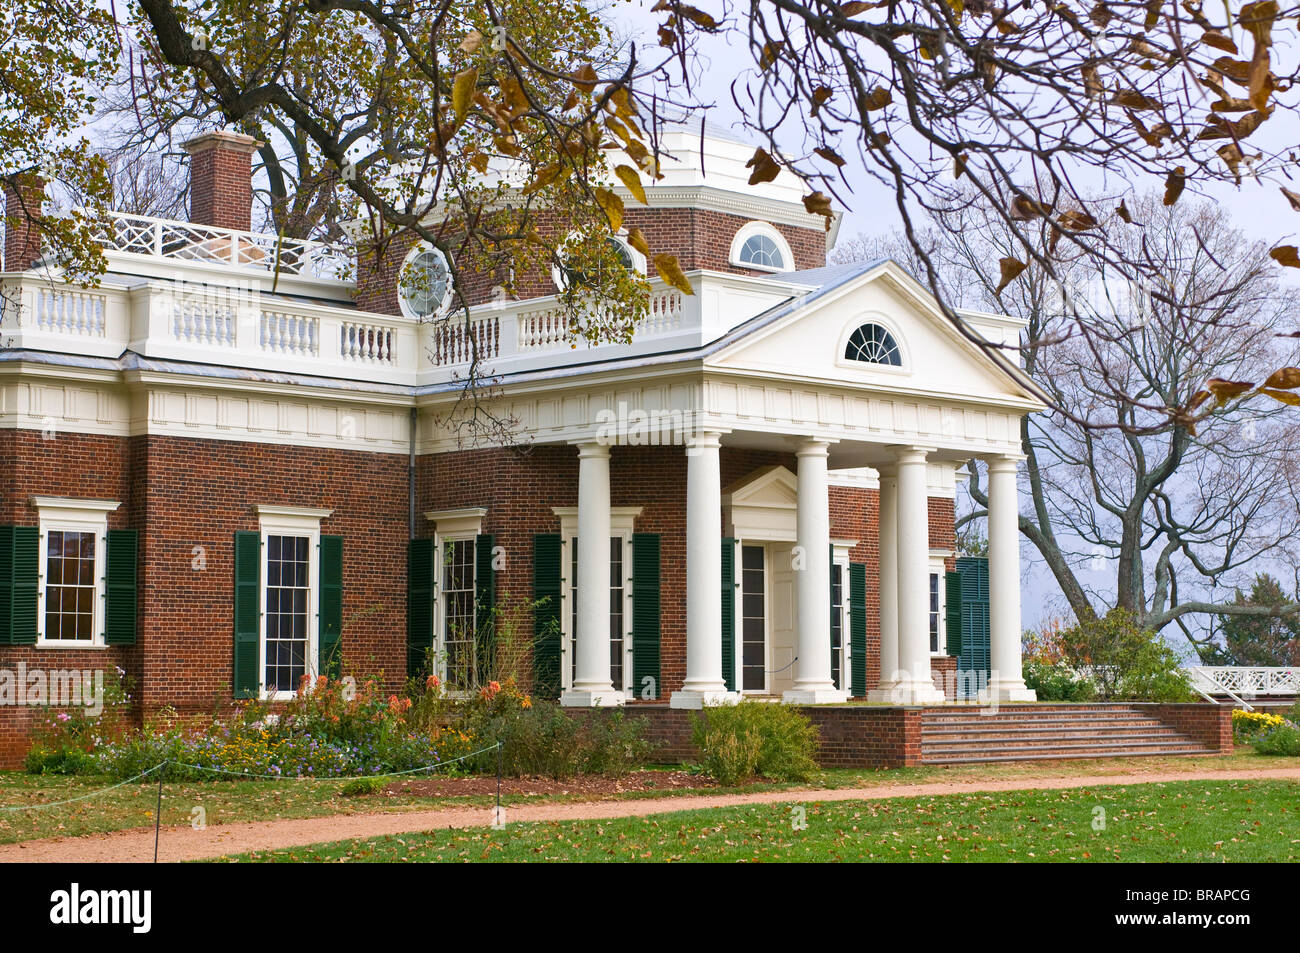 The estate of Thomas Jefferson, Monticello, Virginia, United States of America, North America Stock Photo